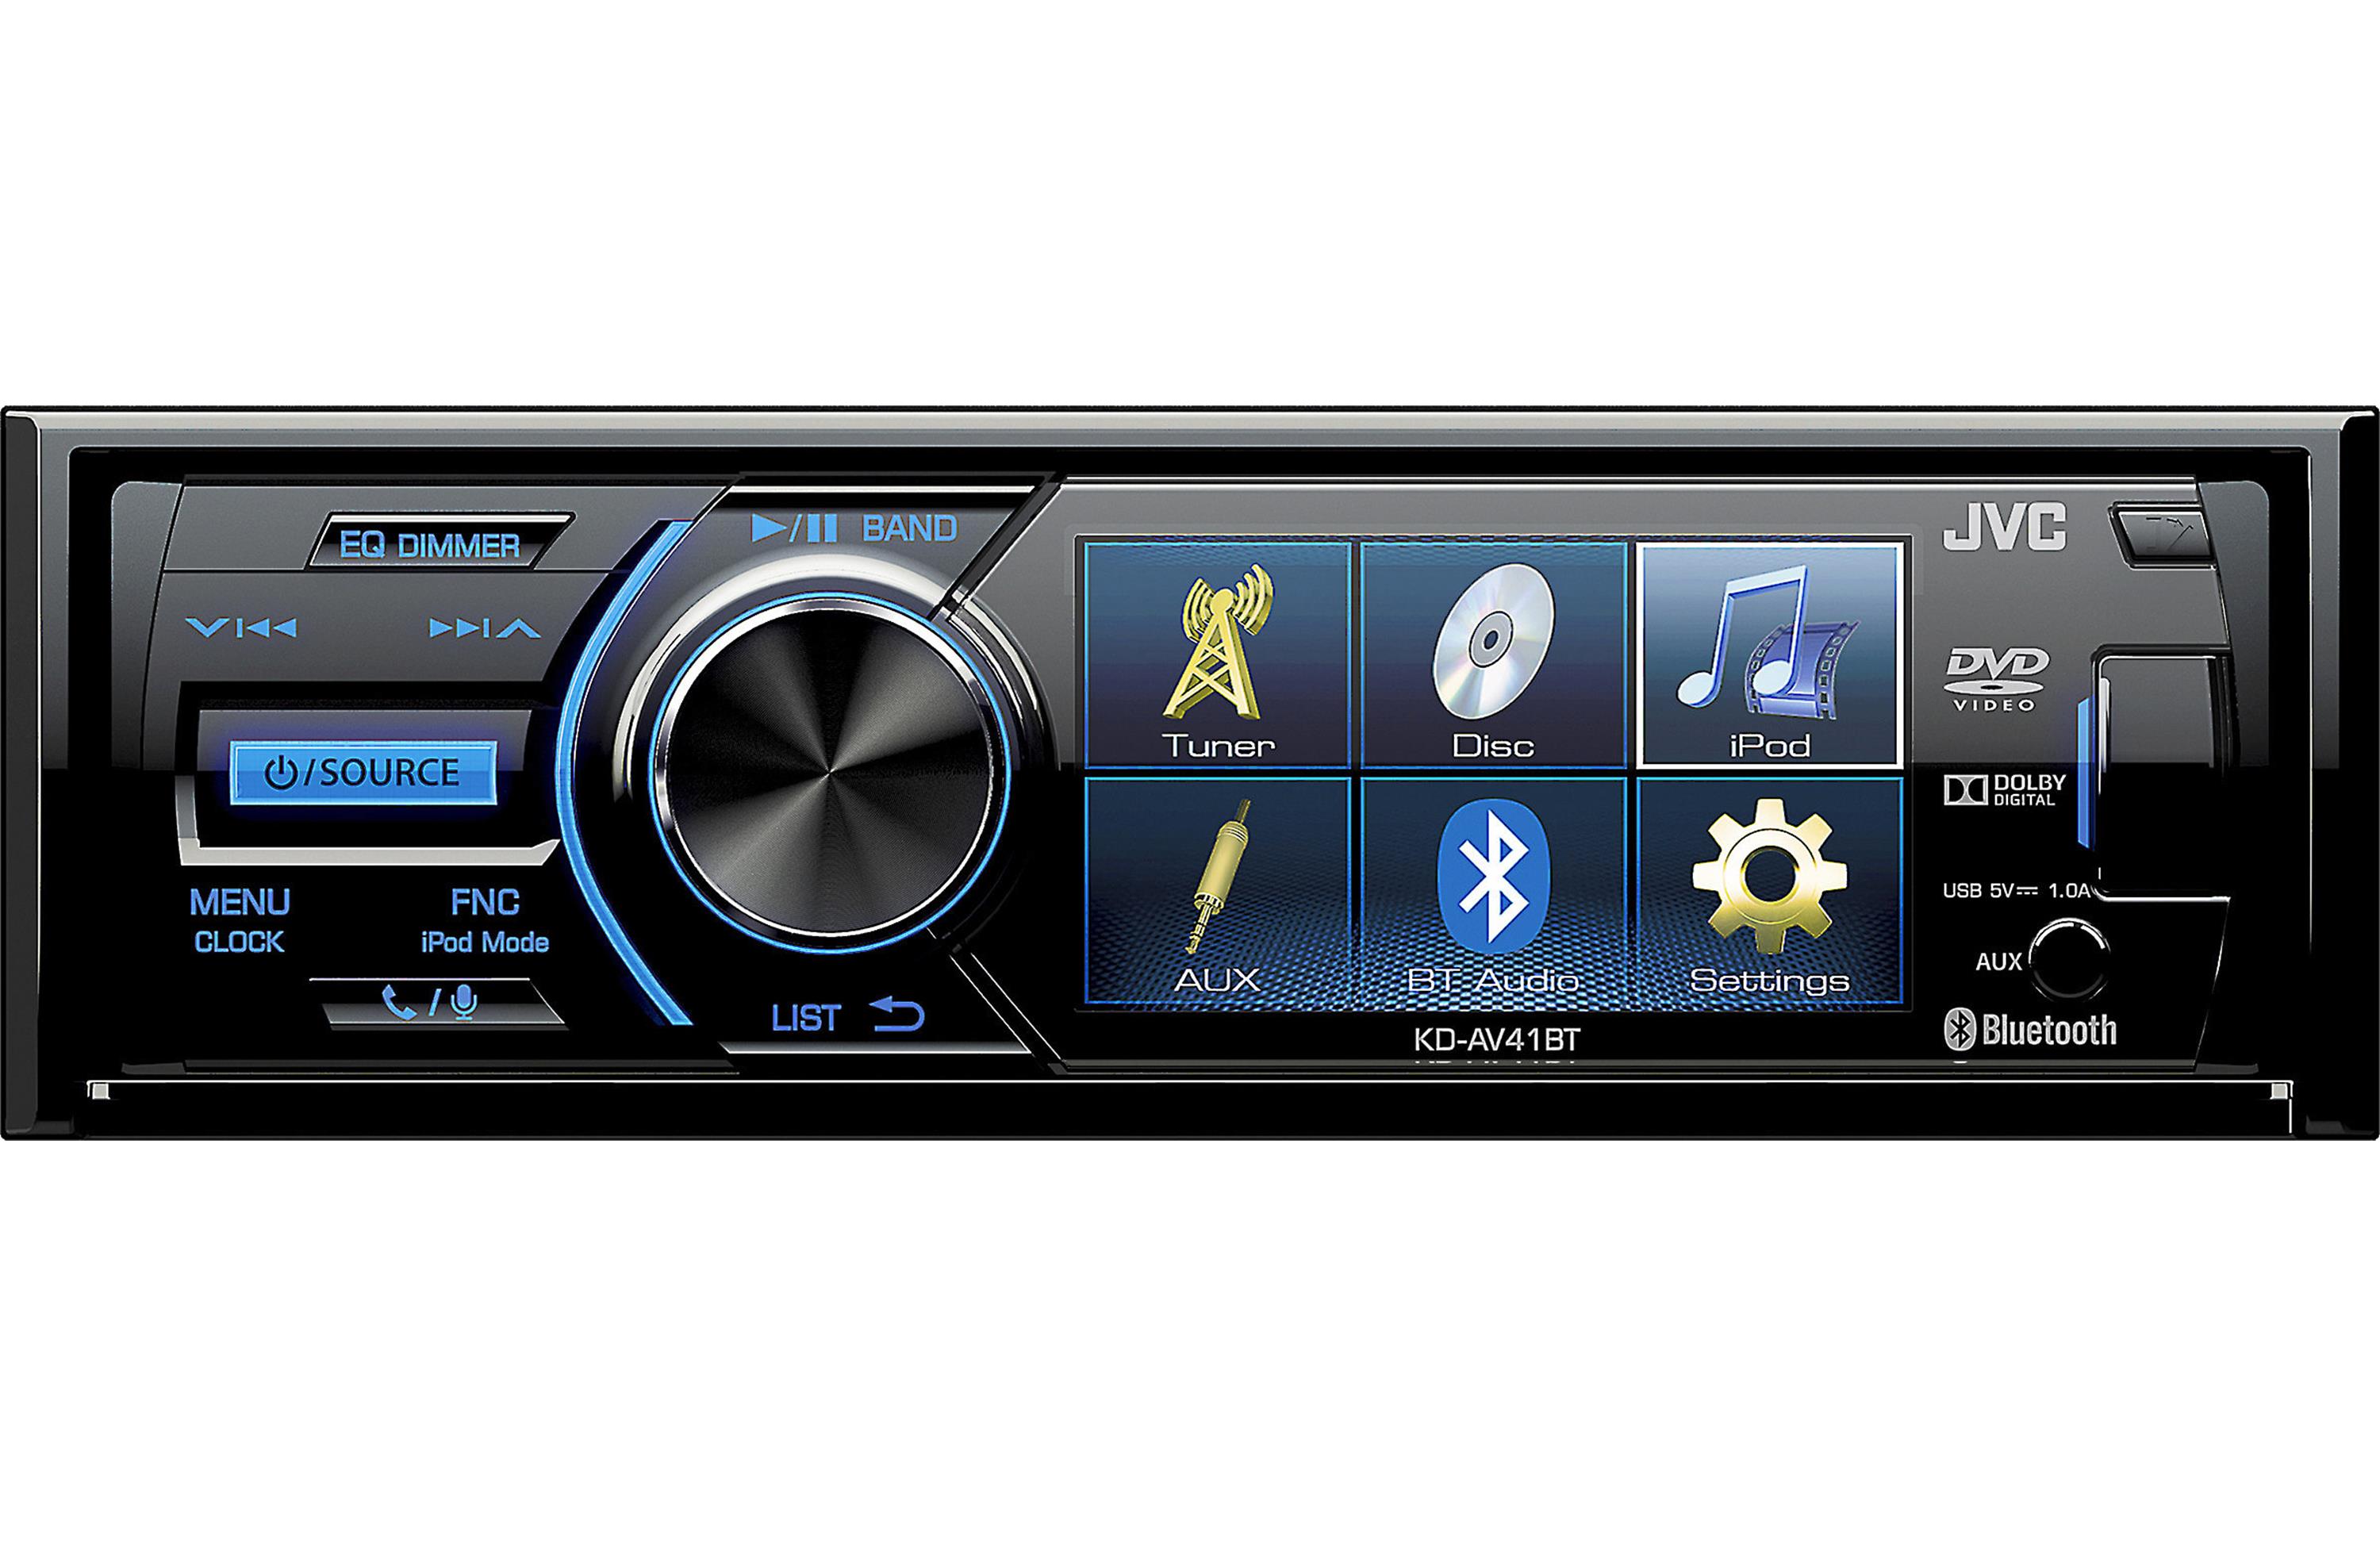 JVC KDAV41BT Single Din DVD/CD/MP3 Player 3" LCD Display Bluetooth